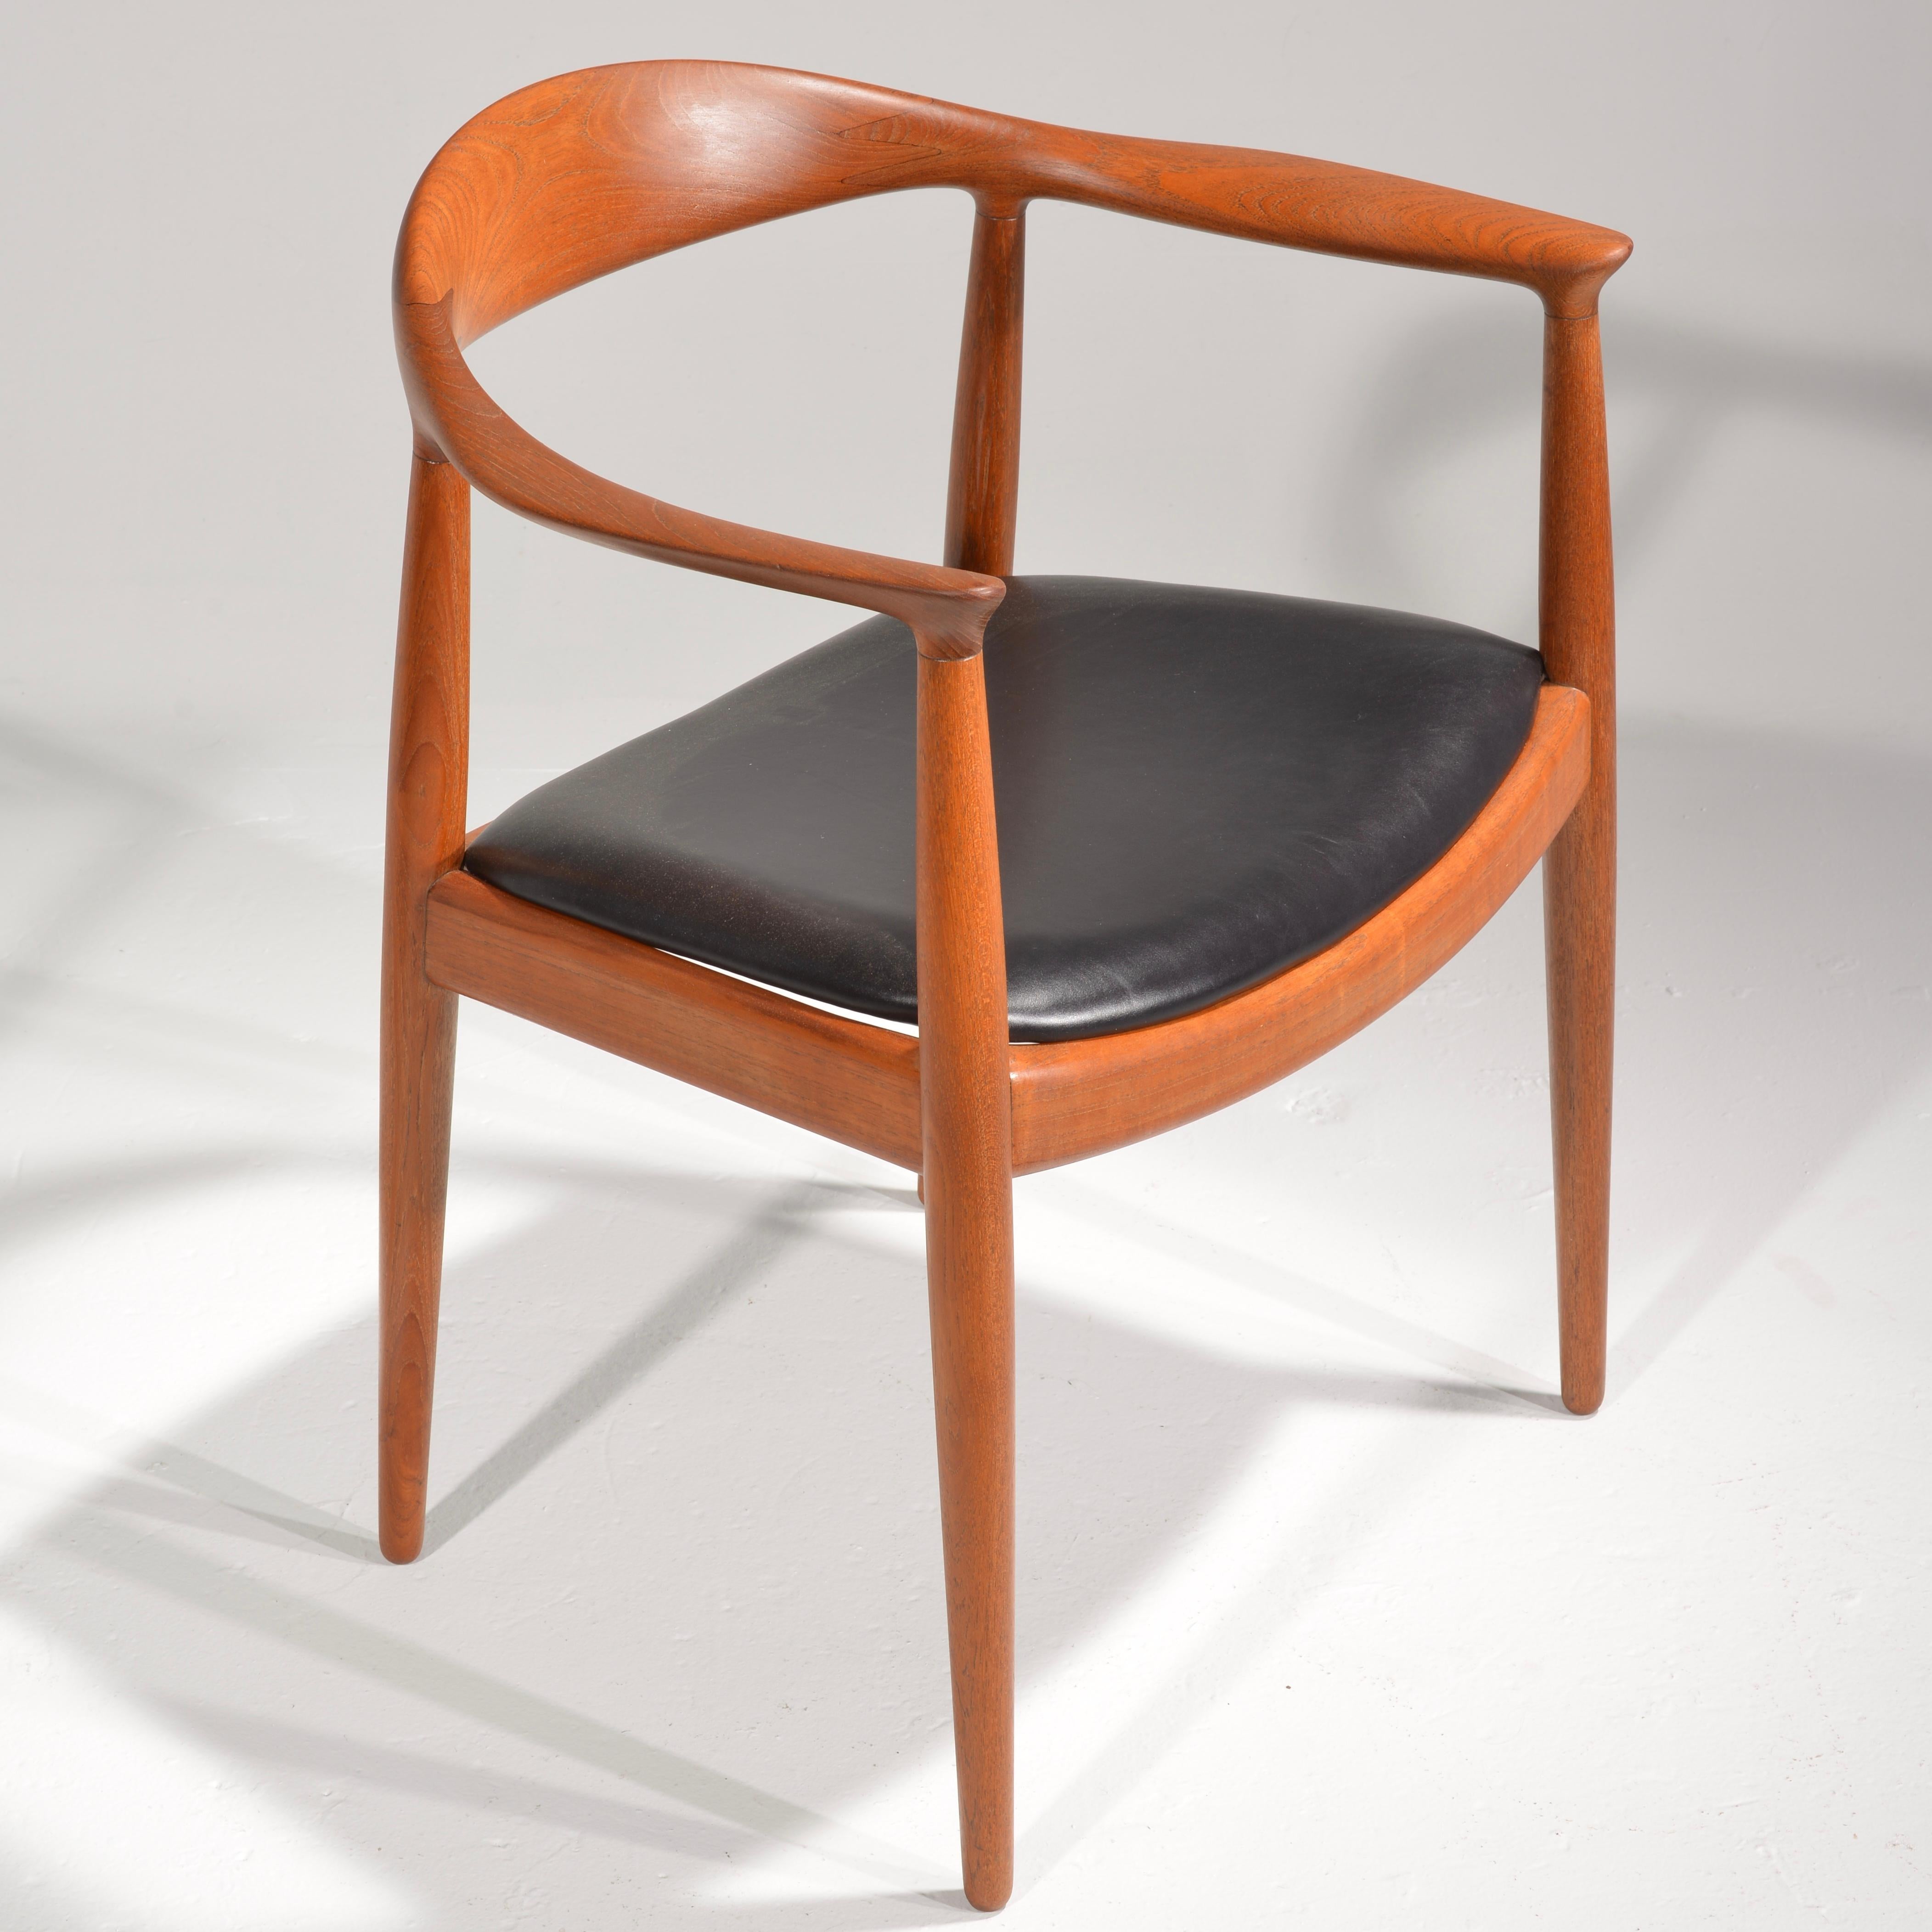 Wir freuen uns, 4 frühe Hans Wegner JH-503 Stühle anbieten zu können, die 1949 entworfen und von Johannes Hansen produziert wurden. Vollständig restaurierte solide Konstruktion aus altem Teakholz. Gestempelt mit der Herstellermarke. Derzeit haben